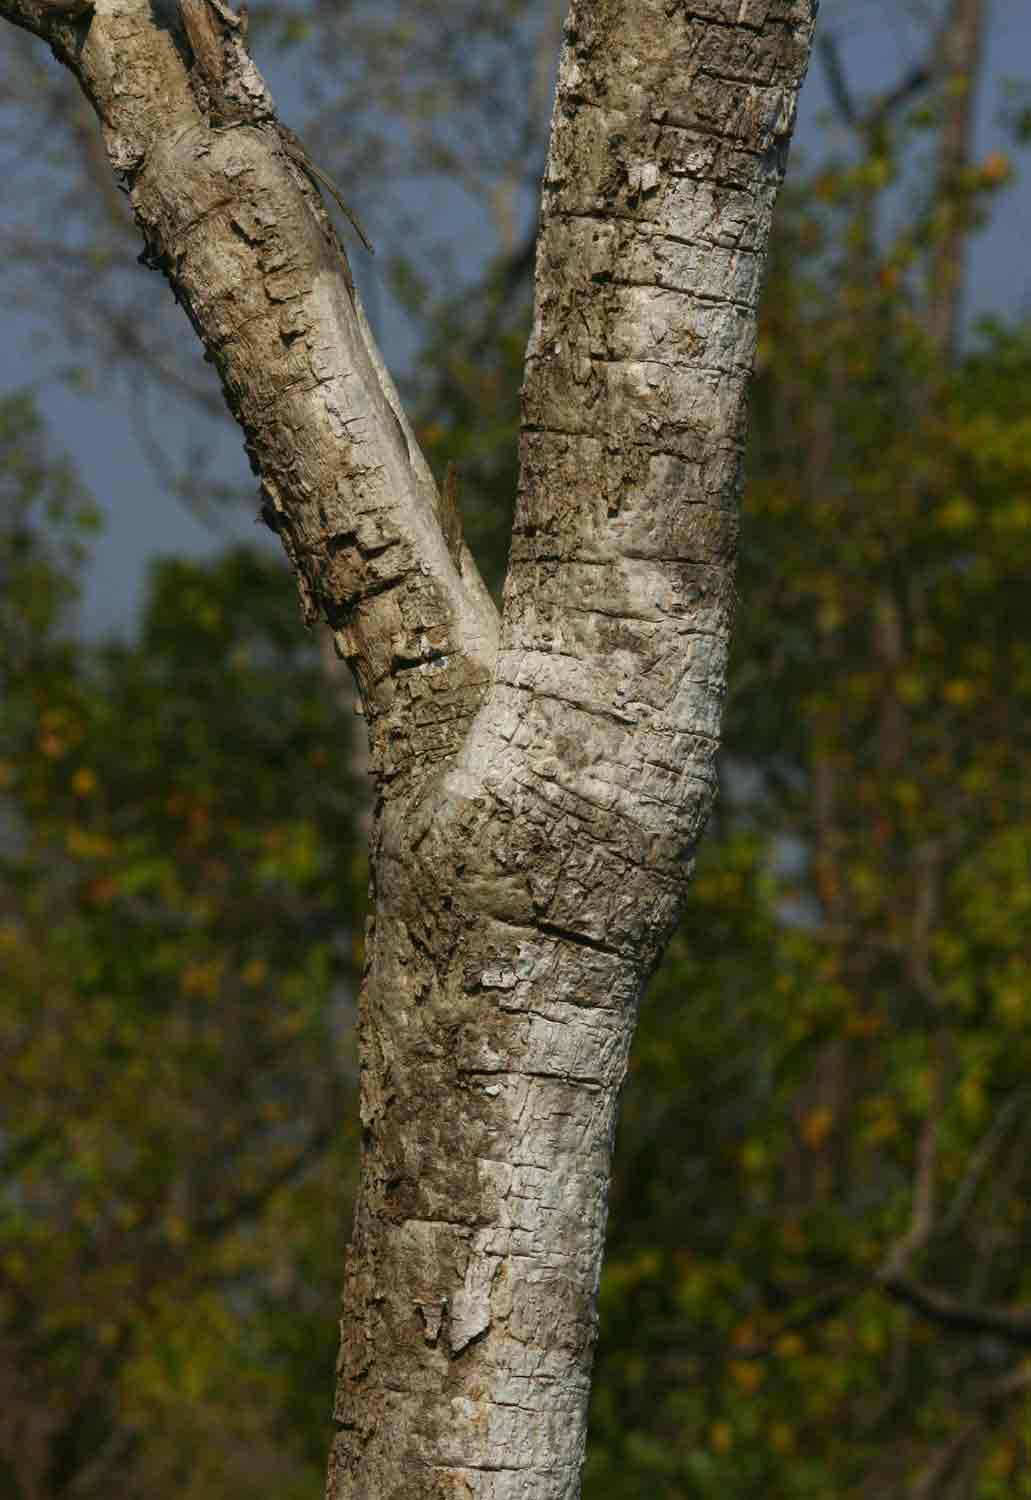 Steganotaenia araliacea var. araliacea